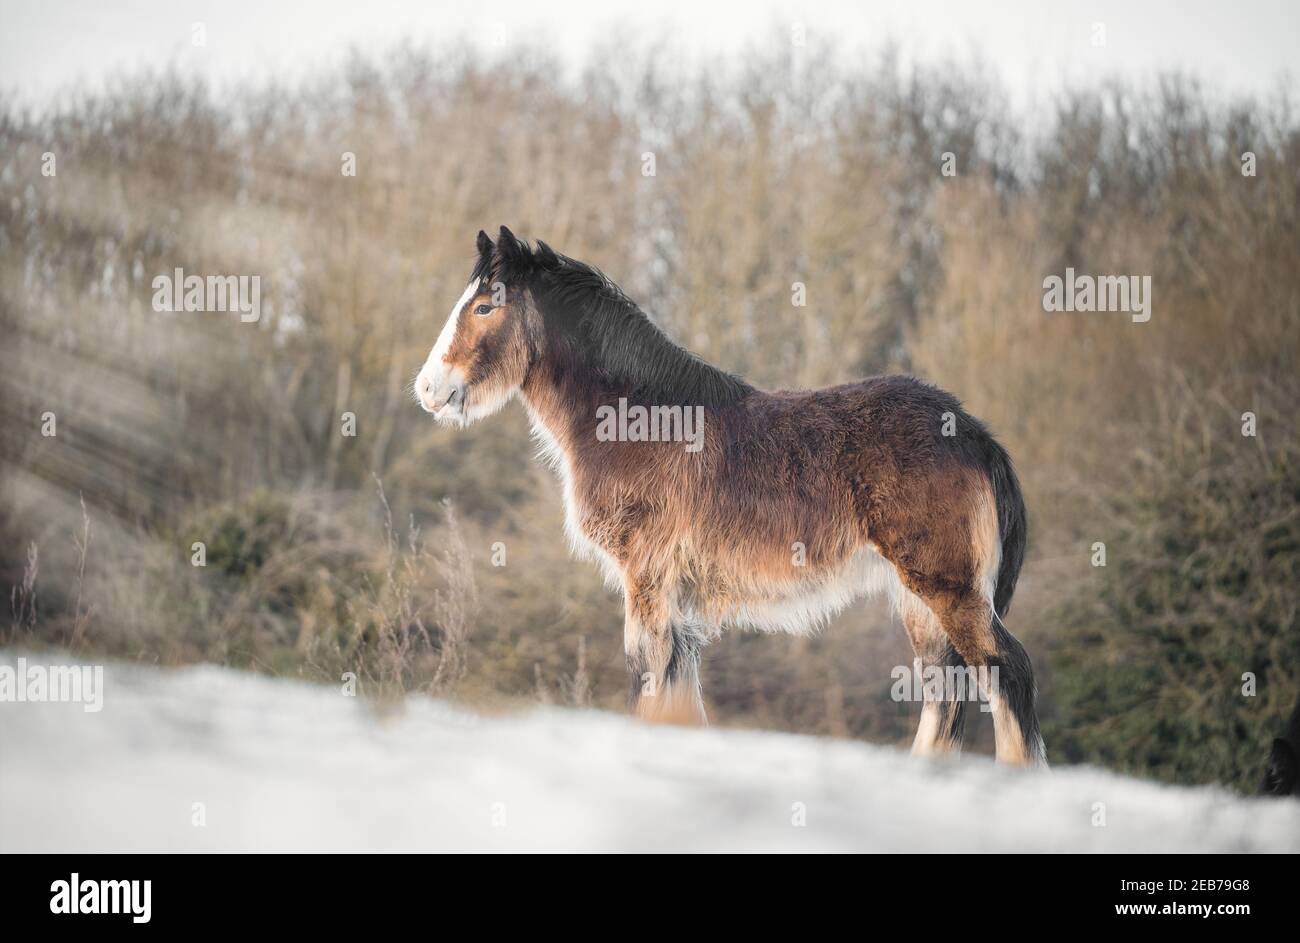 Bella grande irlandese Gypsy COB cavallo nemico in piedi selvaggio in campo di neve sul terreno guardando verso la macchina fotografica freddo e nevoso profondo paesaggio invernale al tramonto Foto Stock